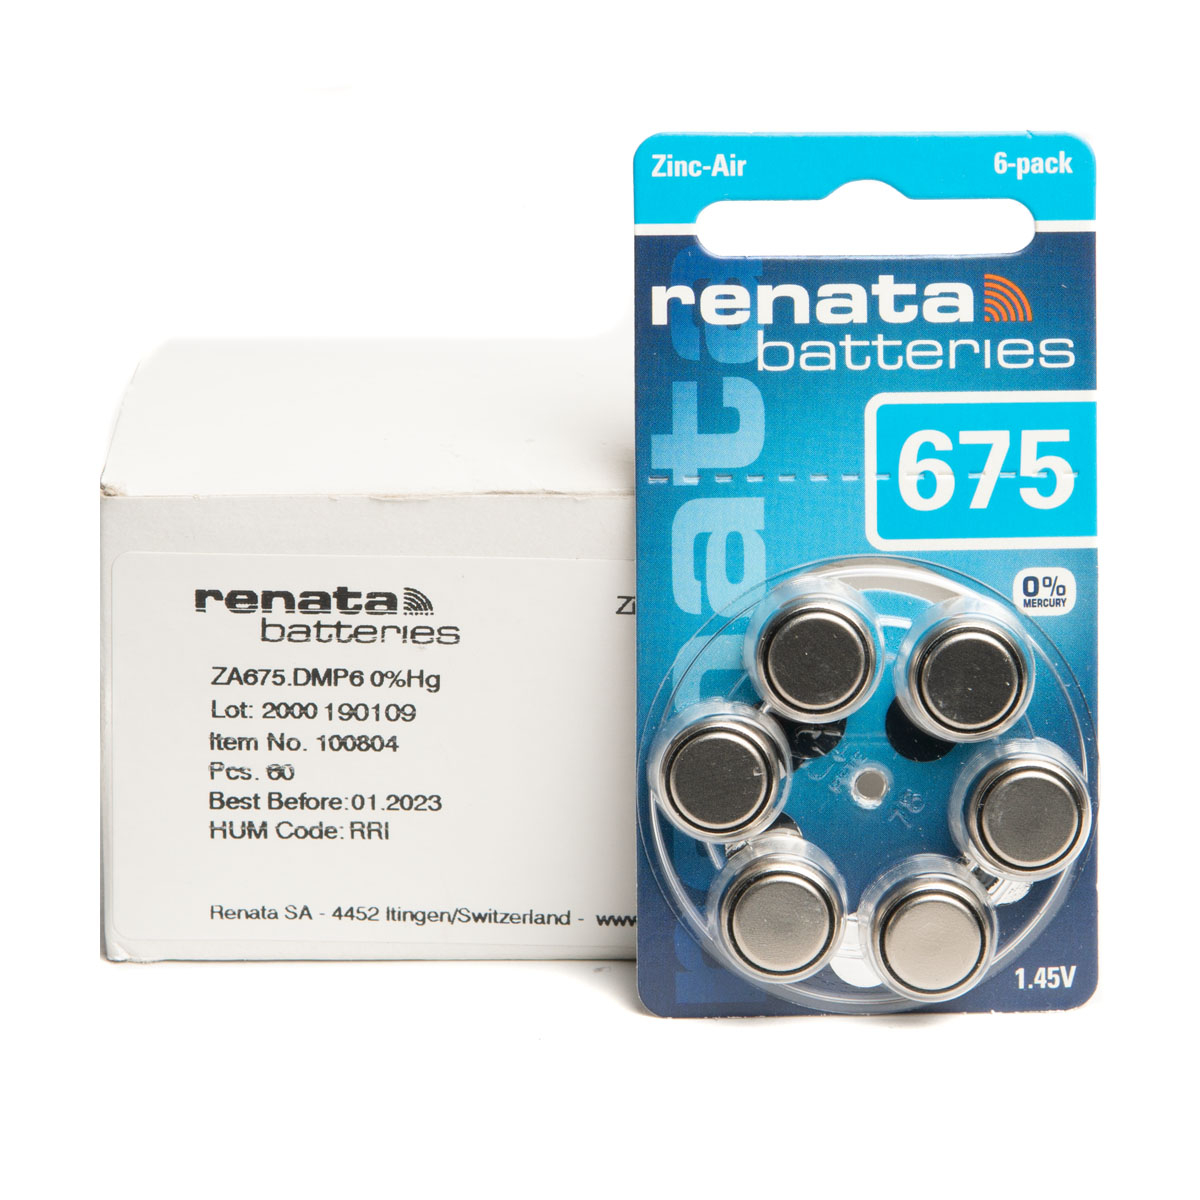 RENATA Zinc-Air 675 (0% Hg) BL6